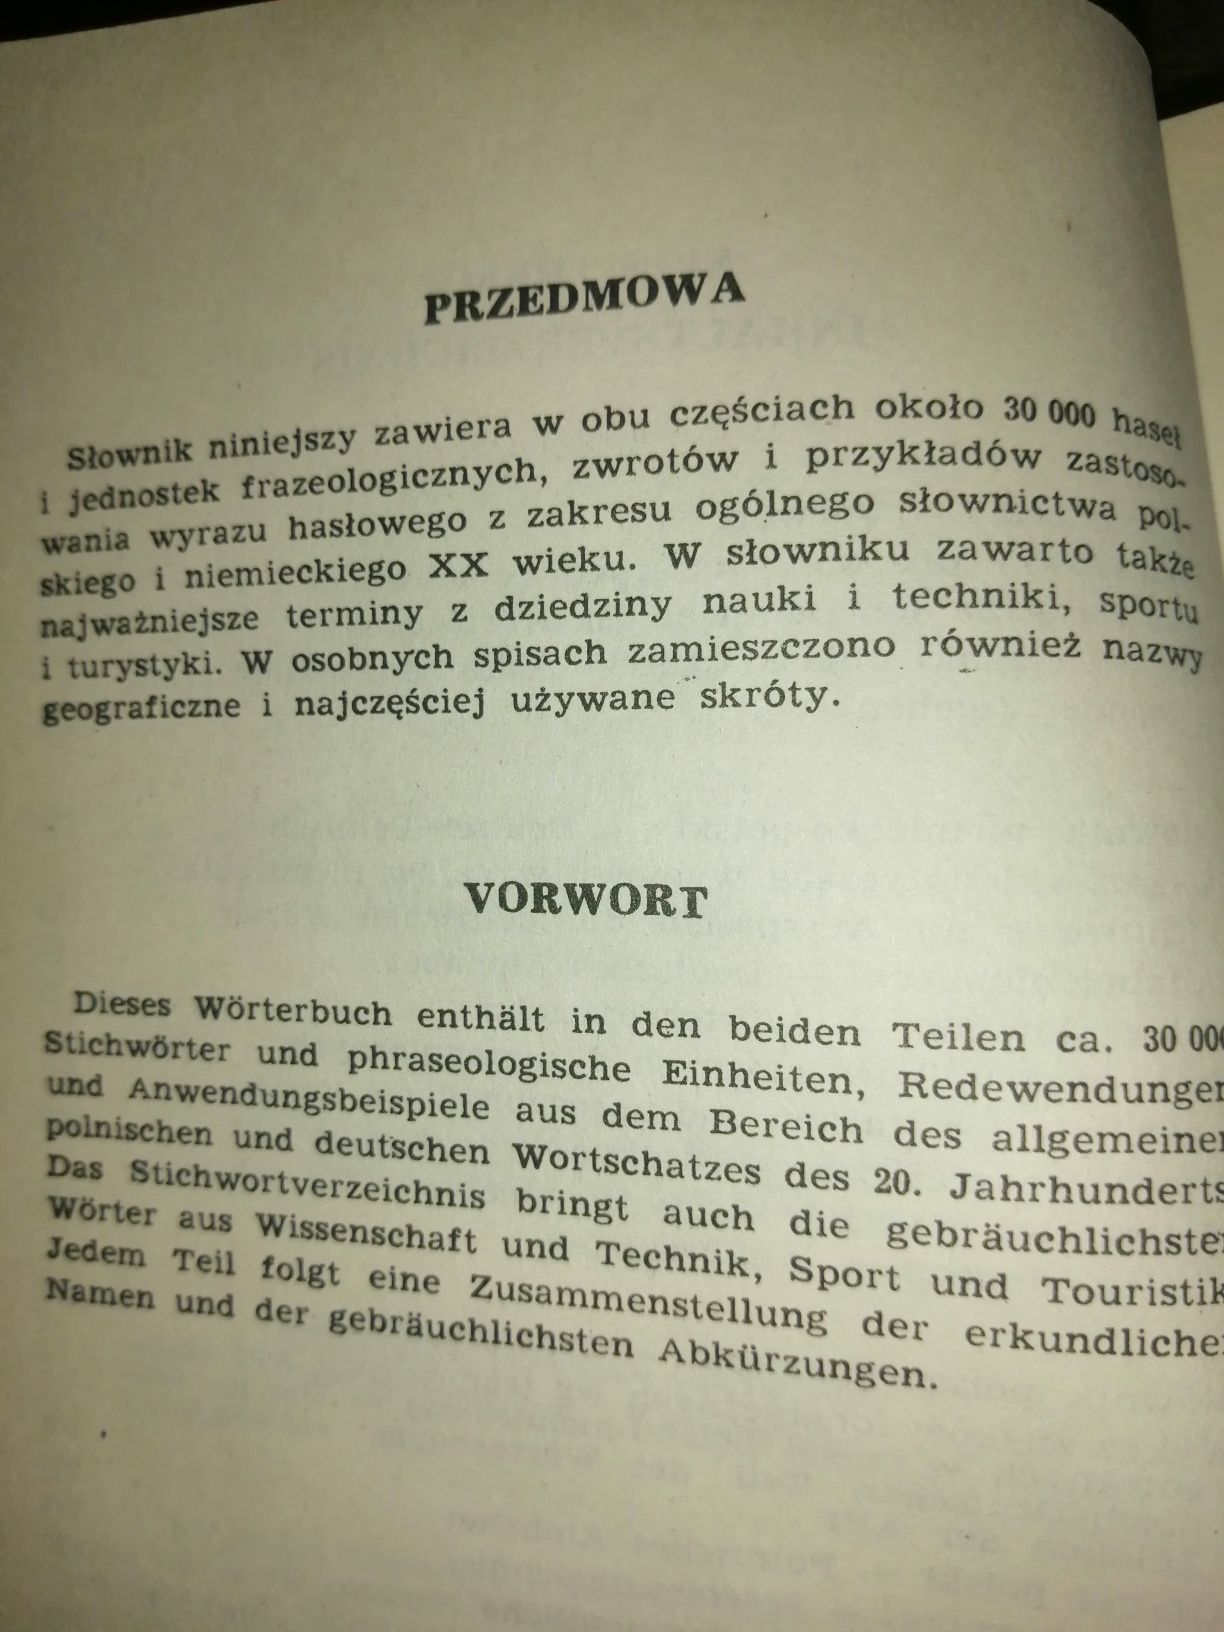 Kieszonkowy słownik niemiecko - polski i posko - niemiecki